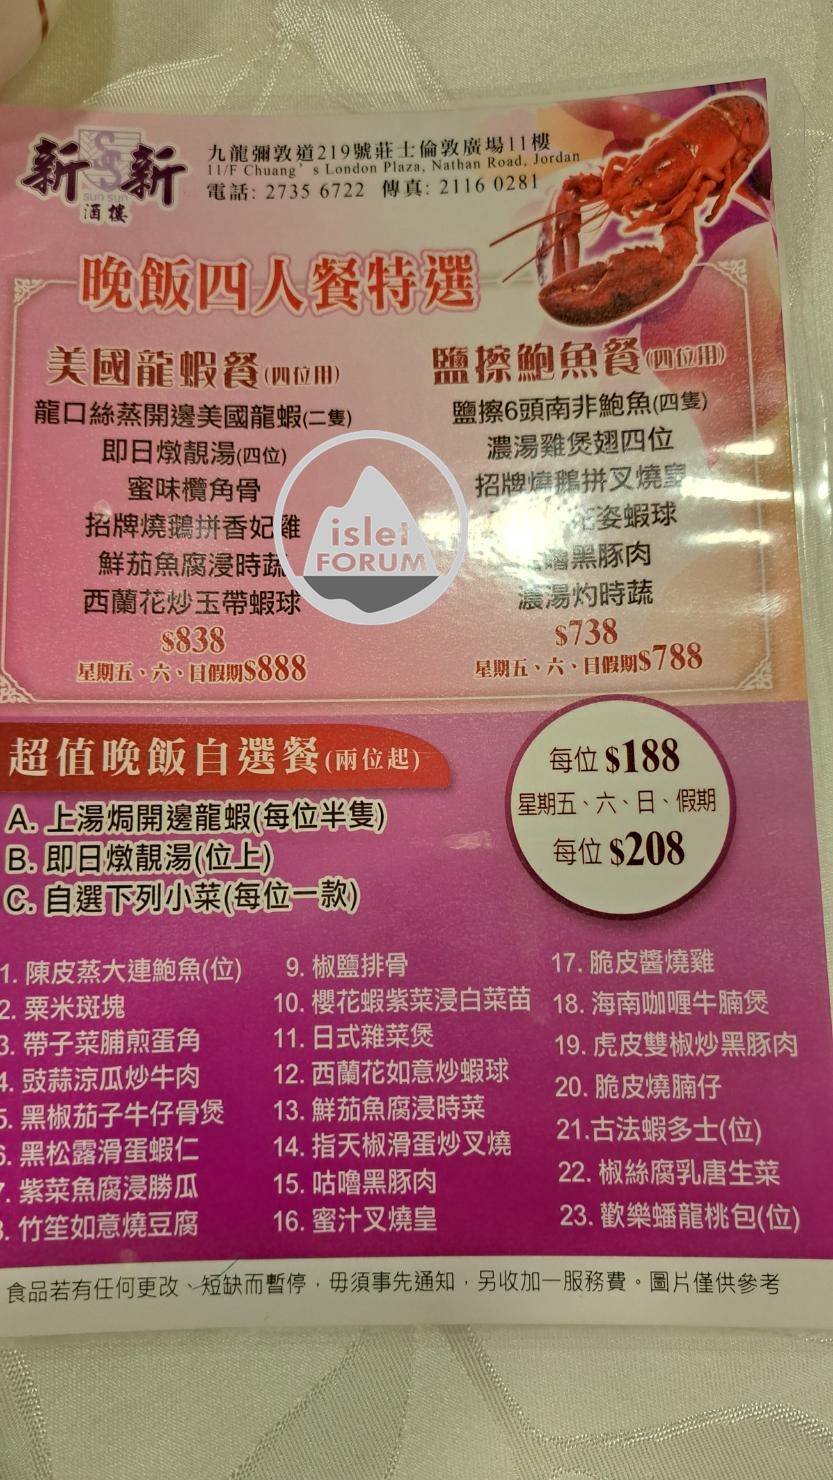 佐敦新新酒樓餐牌Sun Sun Restaurant menu (1).jpg